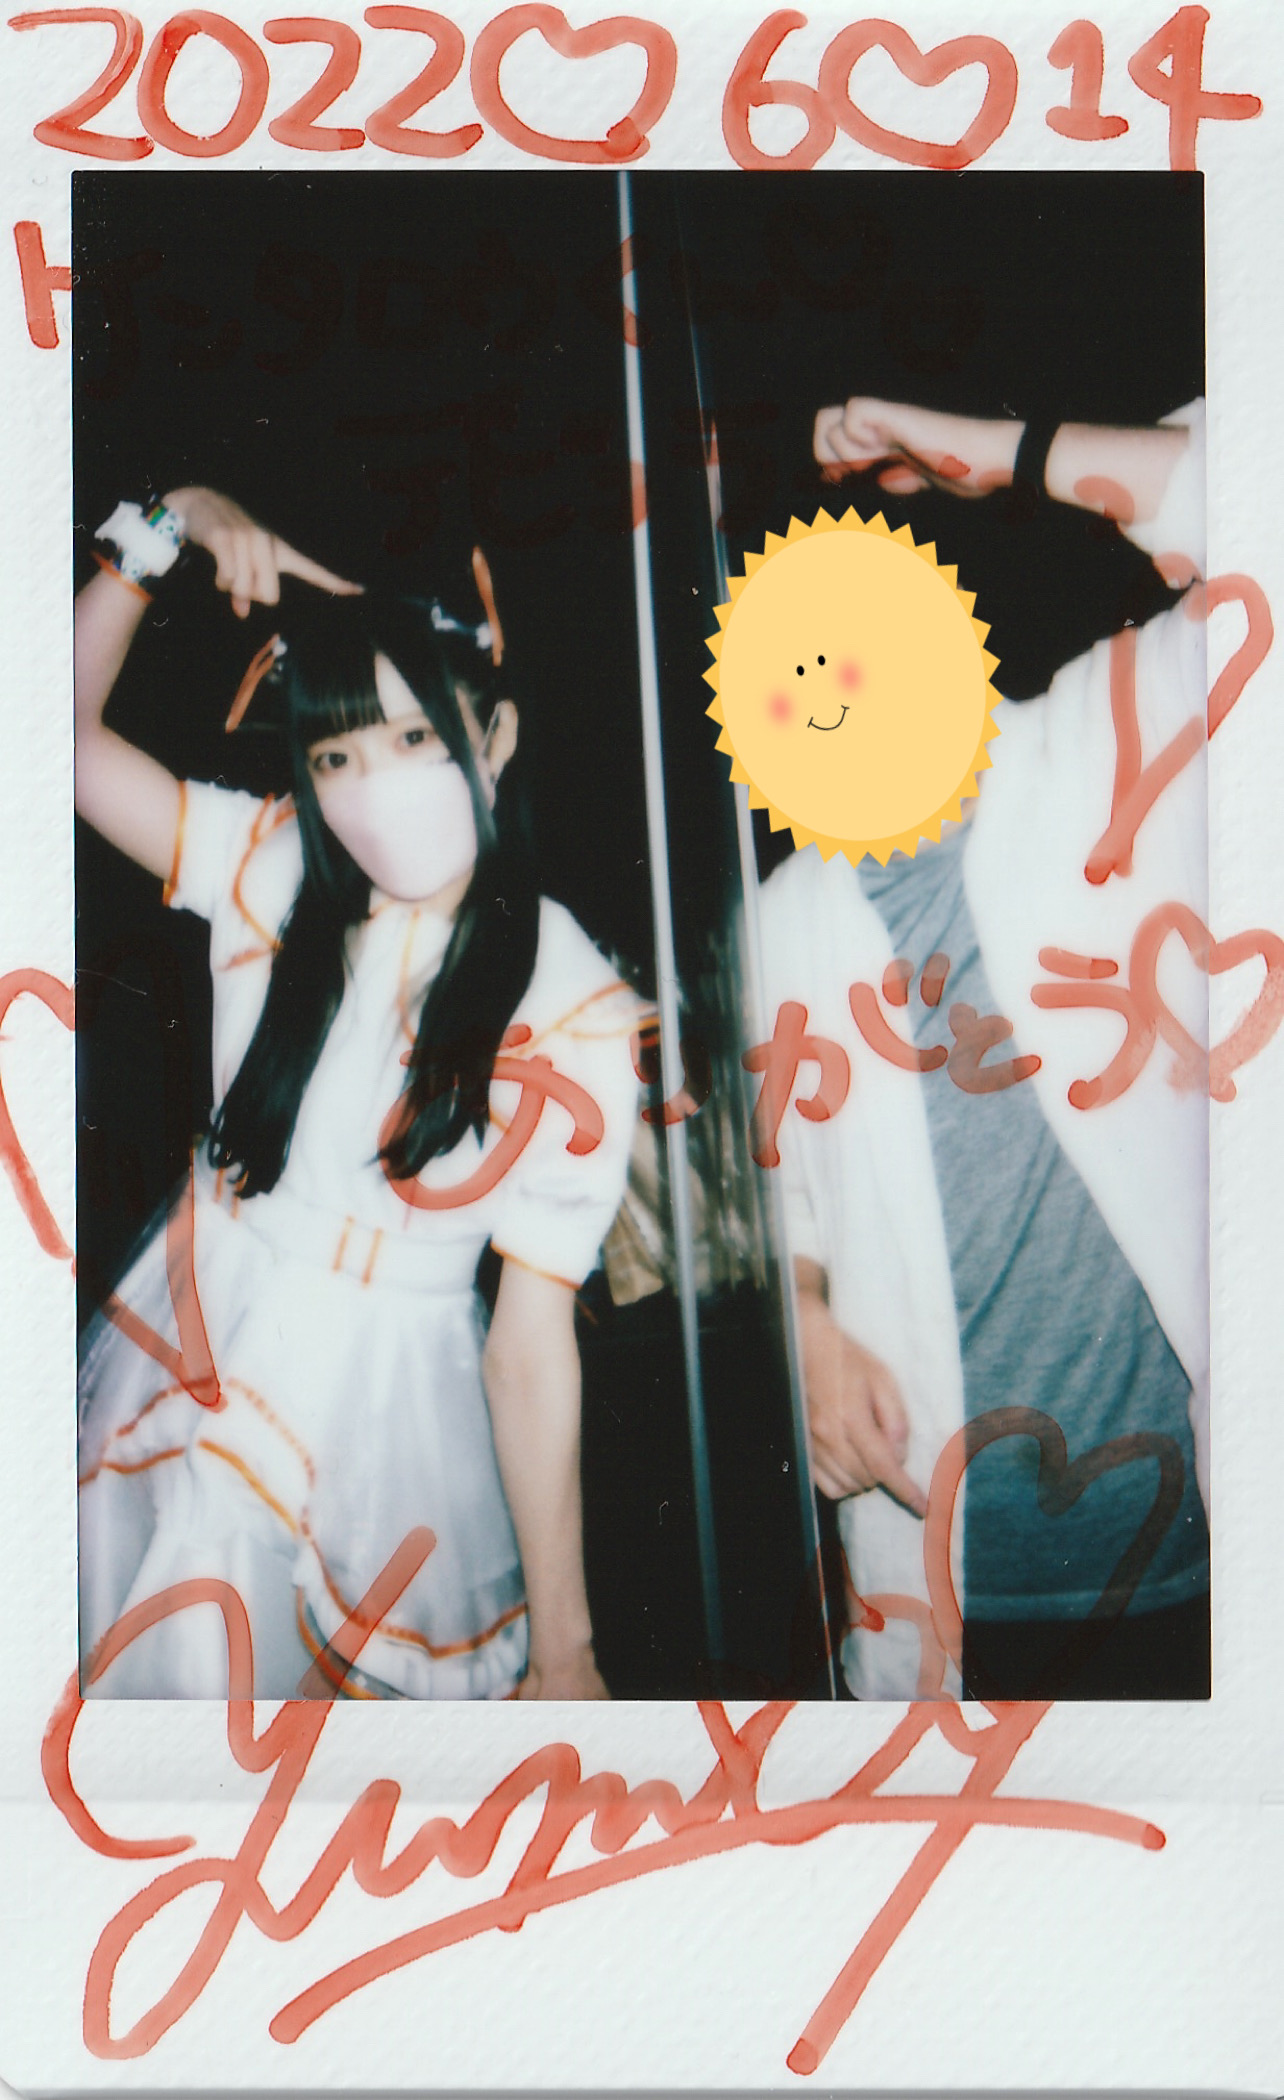 チェキ帳【NANIMONO】2022/6/14デビューライブ@渋谷WWW │ けんヲタの。